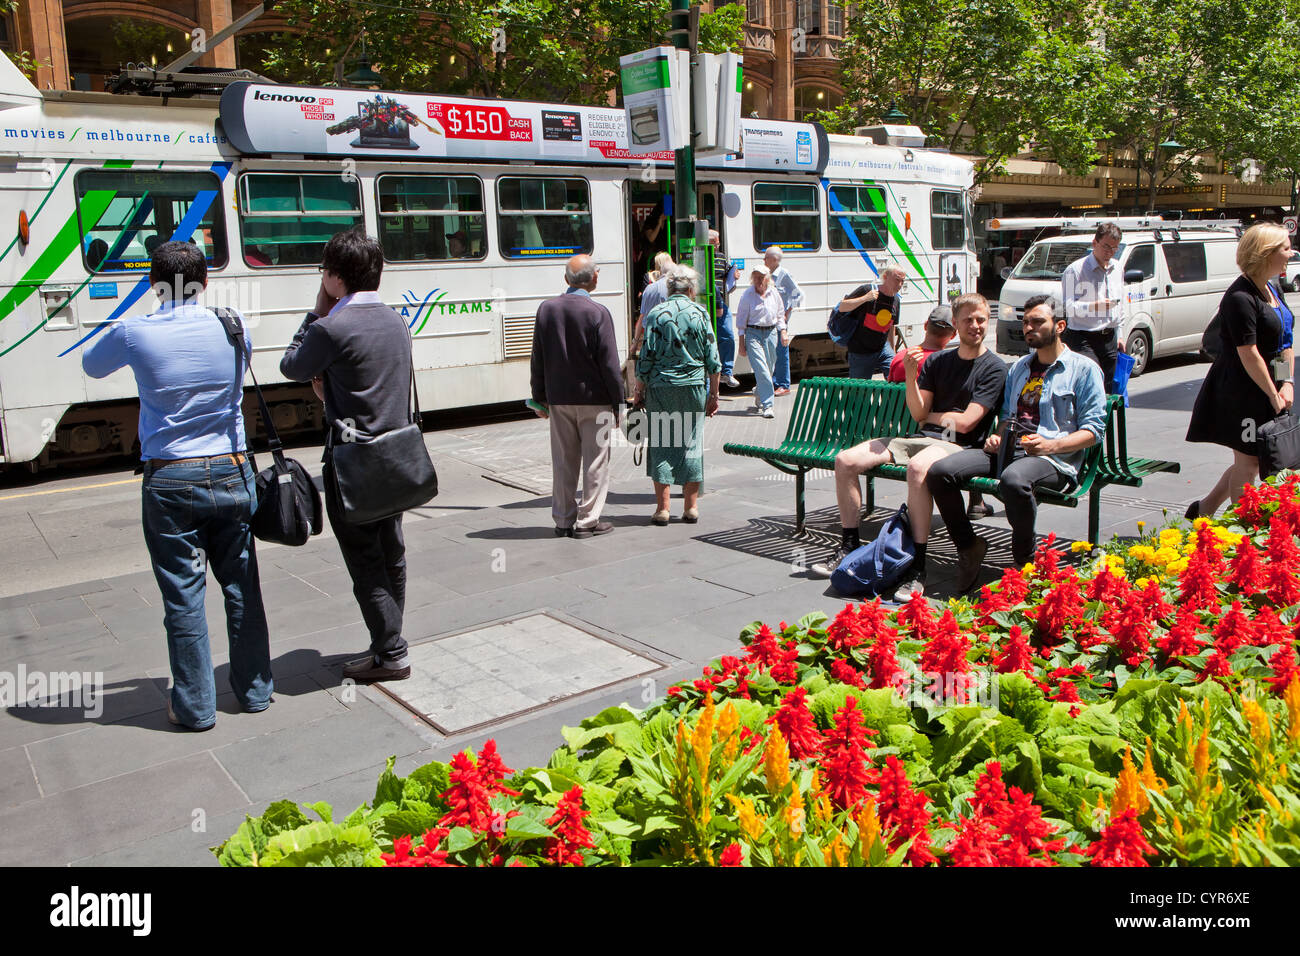 Melbourne central city transport trams sur summers day avec des fleurs dans la rue. Banque D'Images